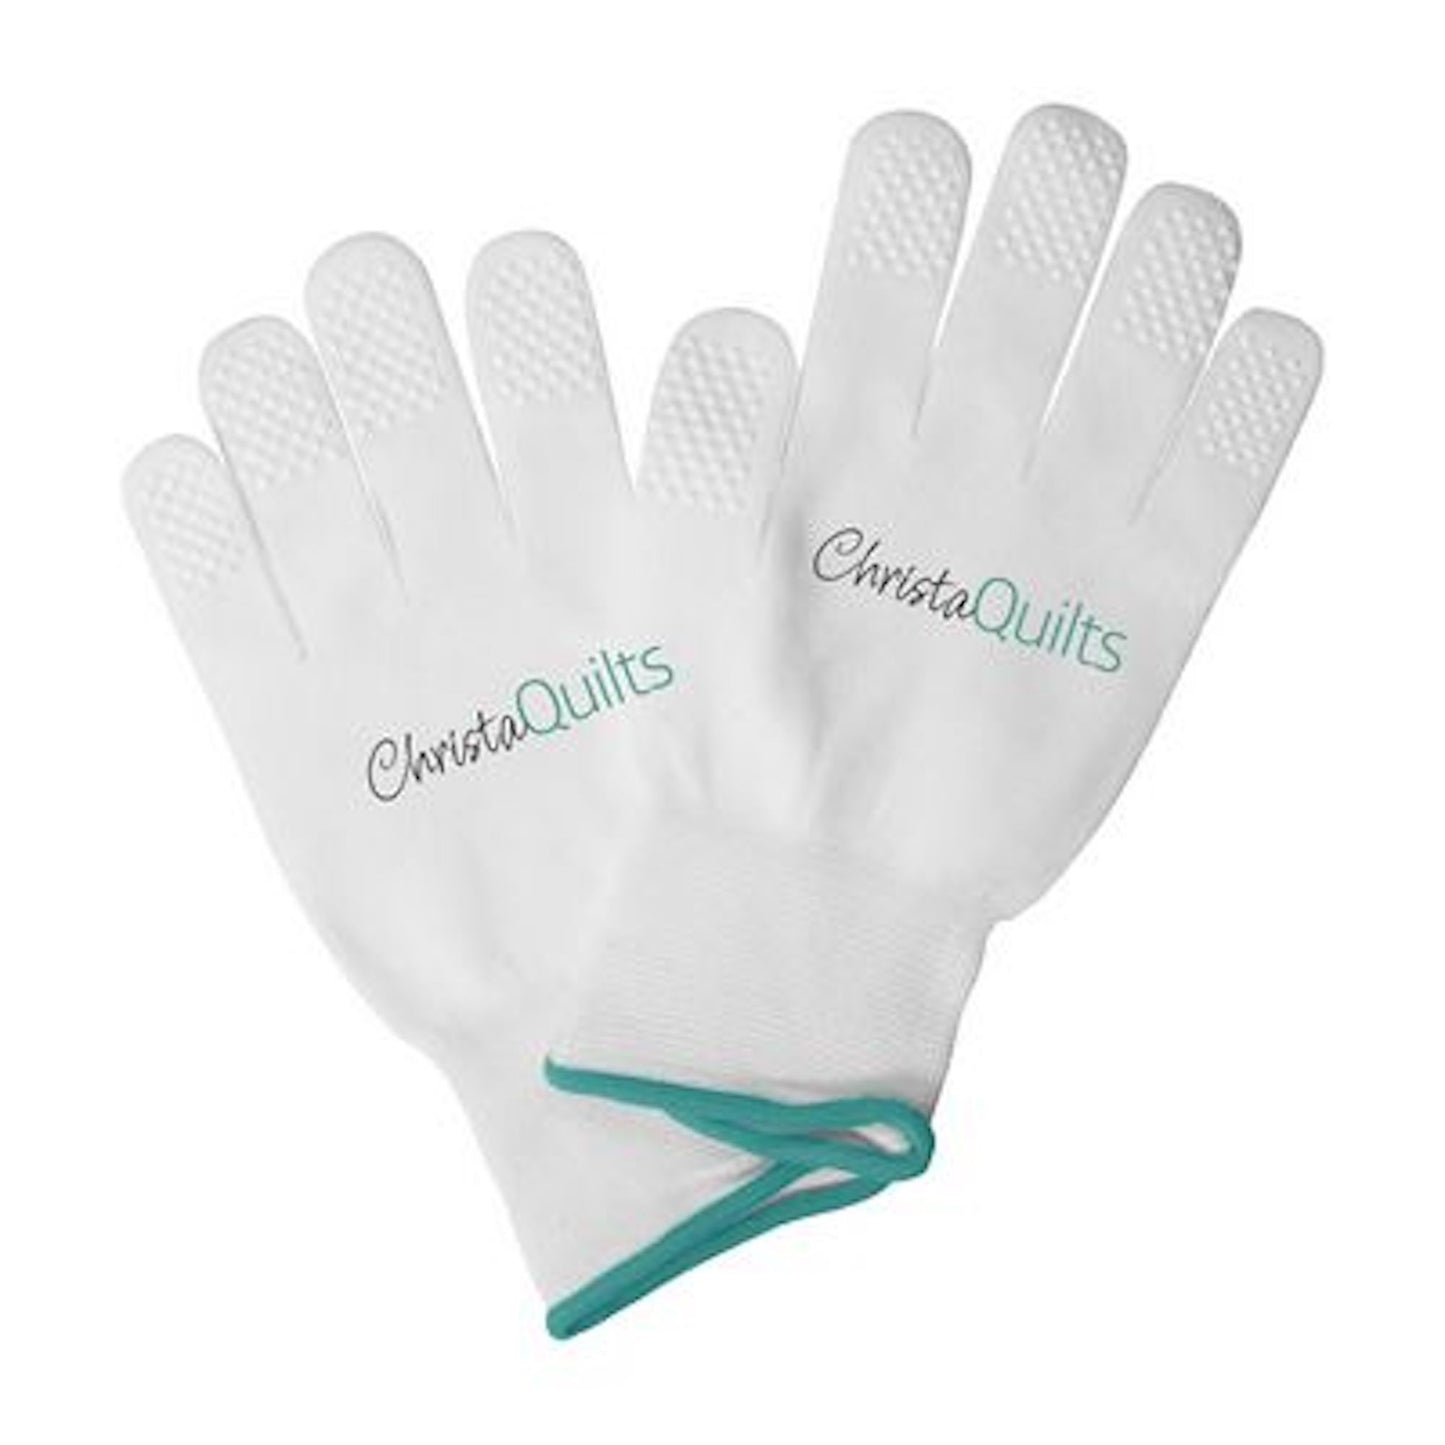 Christa Quilts- Machine Quilting Gloves